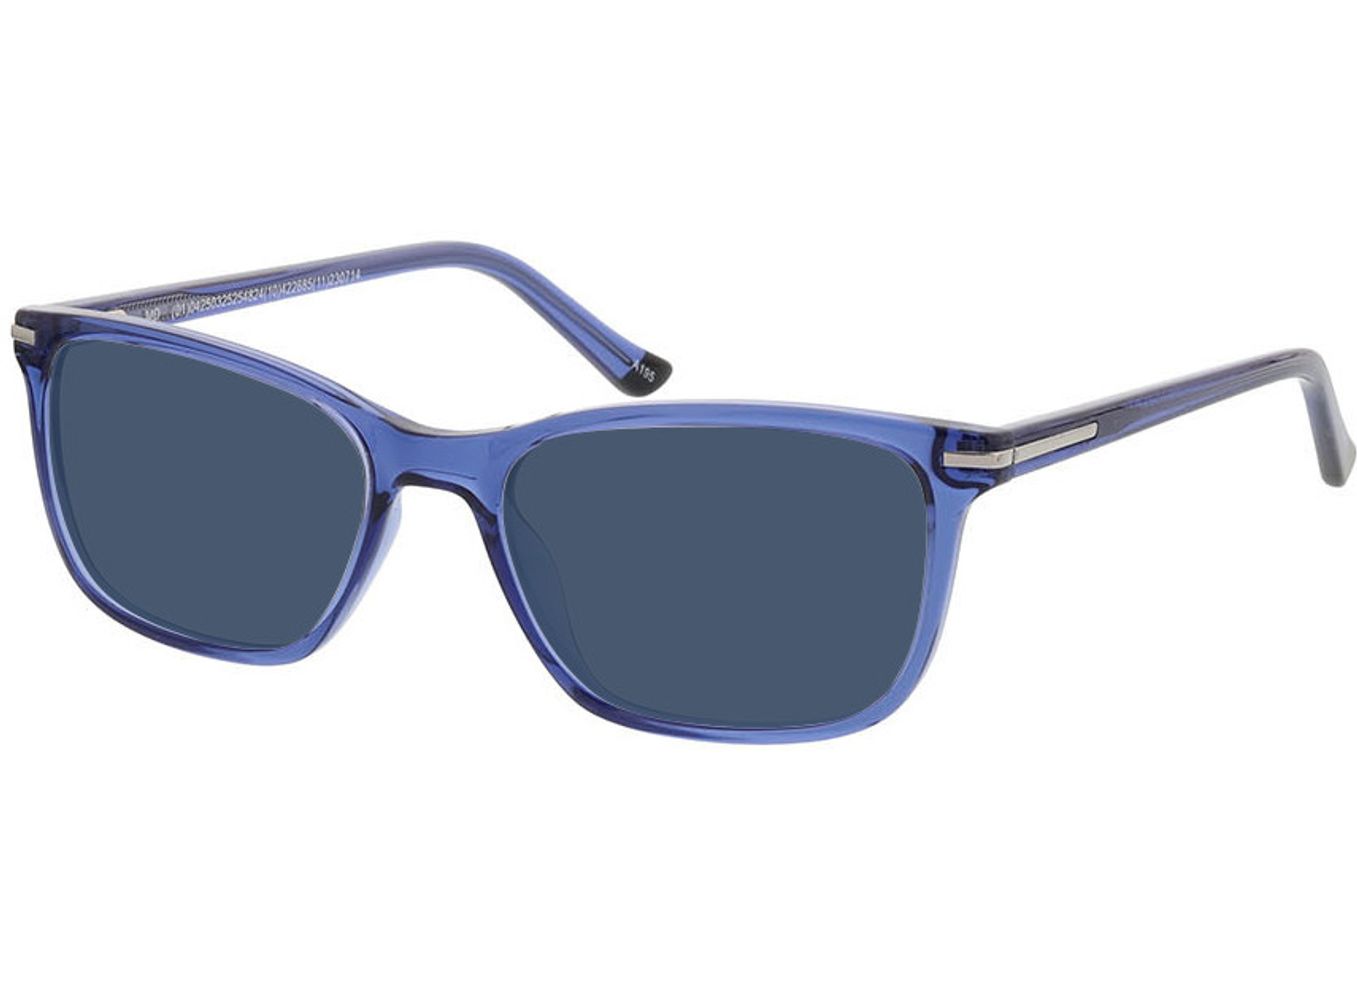 Lexington - blau Sonnenbrille mit Sehstärke, Vollrand, Rechteckig von Brille24 Collection